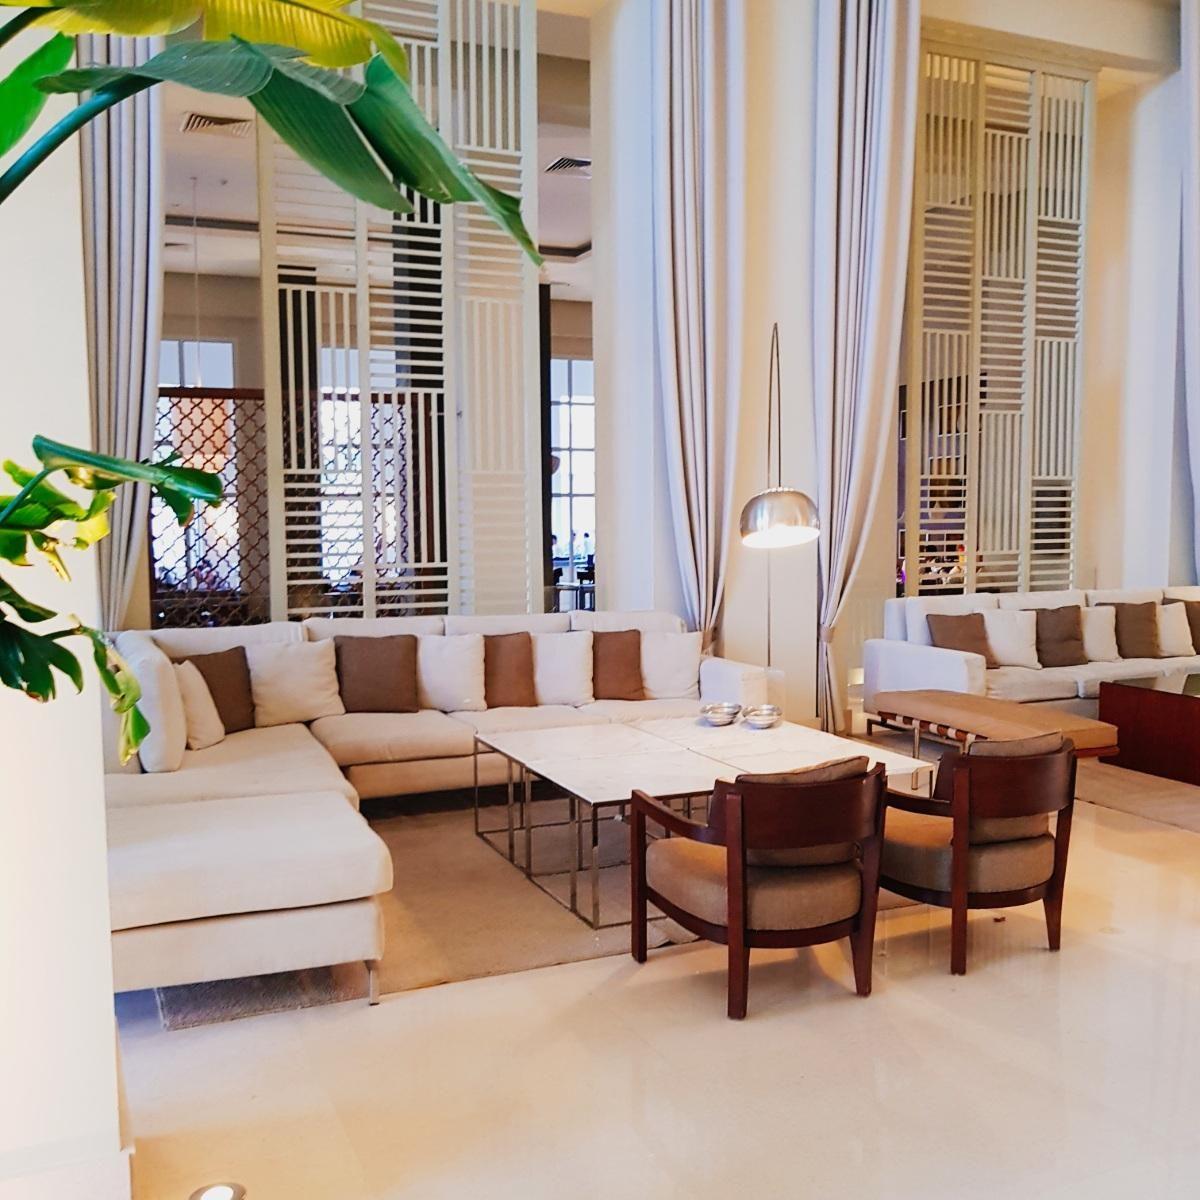 Hotel-Lobby mit Stil! #naturtöne #couch #Vorhänge #pflanzen